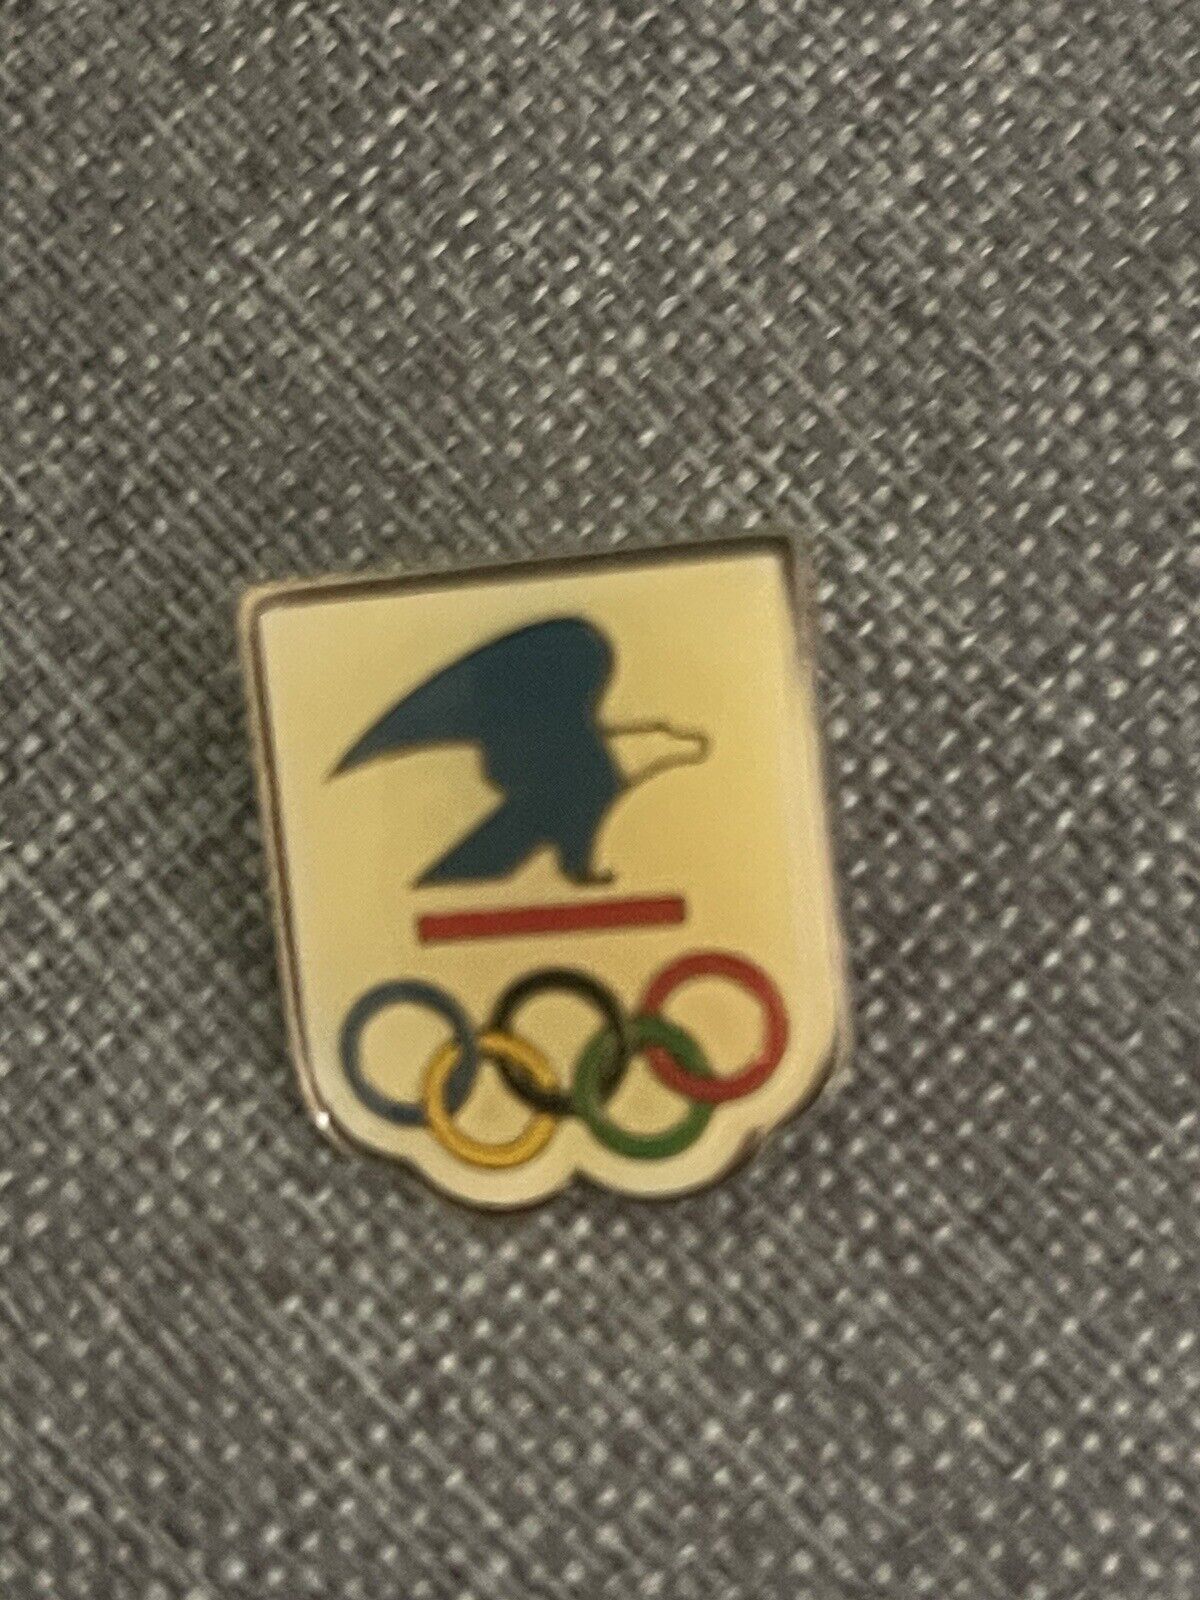 Vintage U.S. Postal Service Olympic Rings Enamel Pin